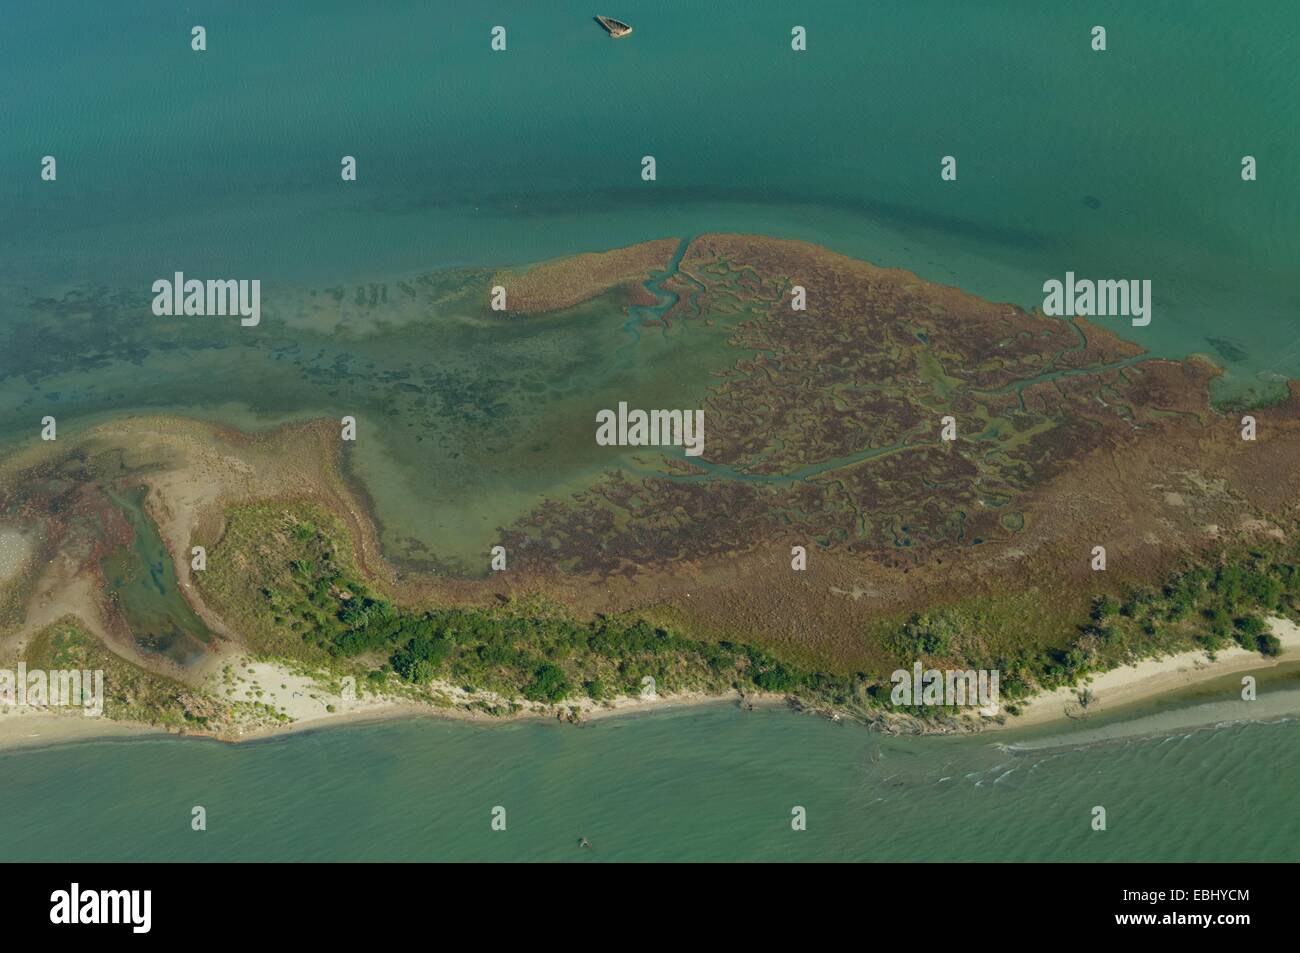 Veduta aerea dell'isolotto di sabbia nei pressi di Sant Erasmo, laguna di Venezia, Italia, Europa Foto Stock